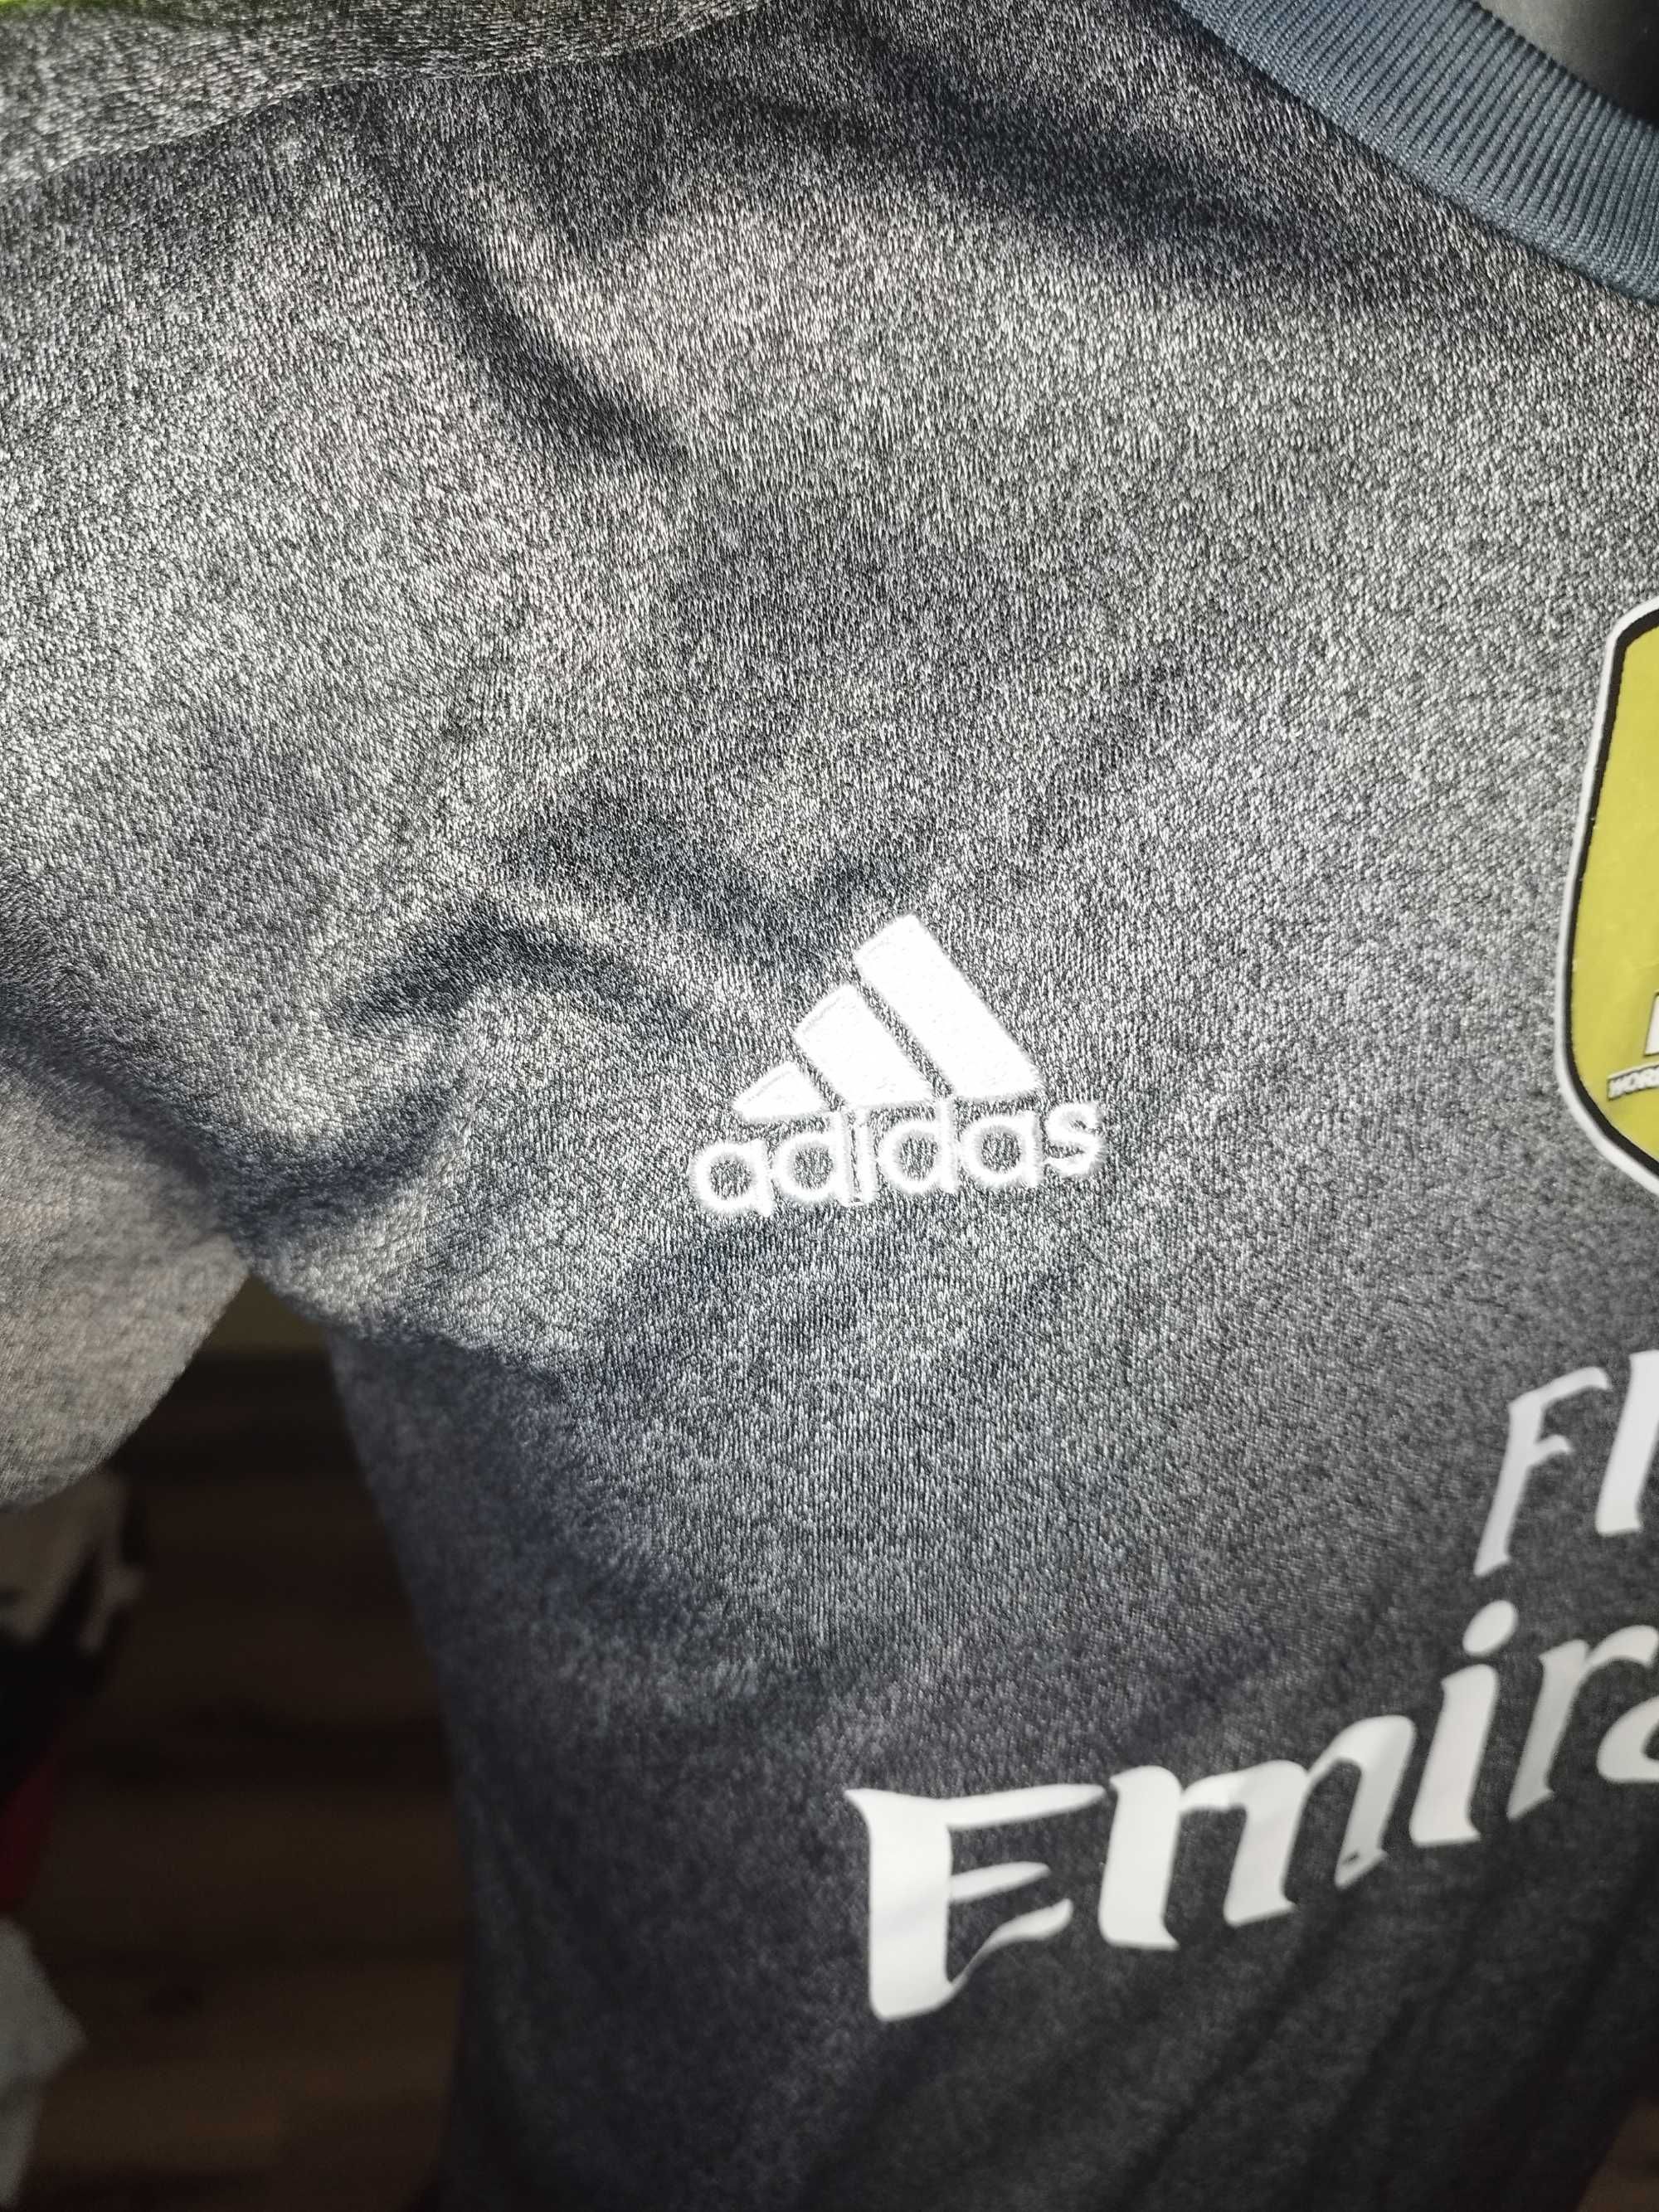 tricou real madrid odegaard #41 adidas 2014 marimea L de colectie